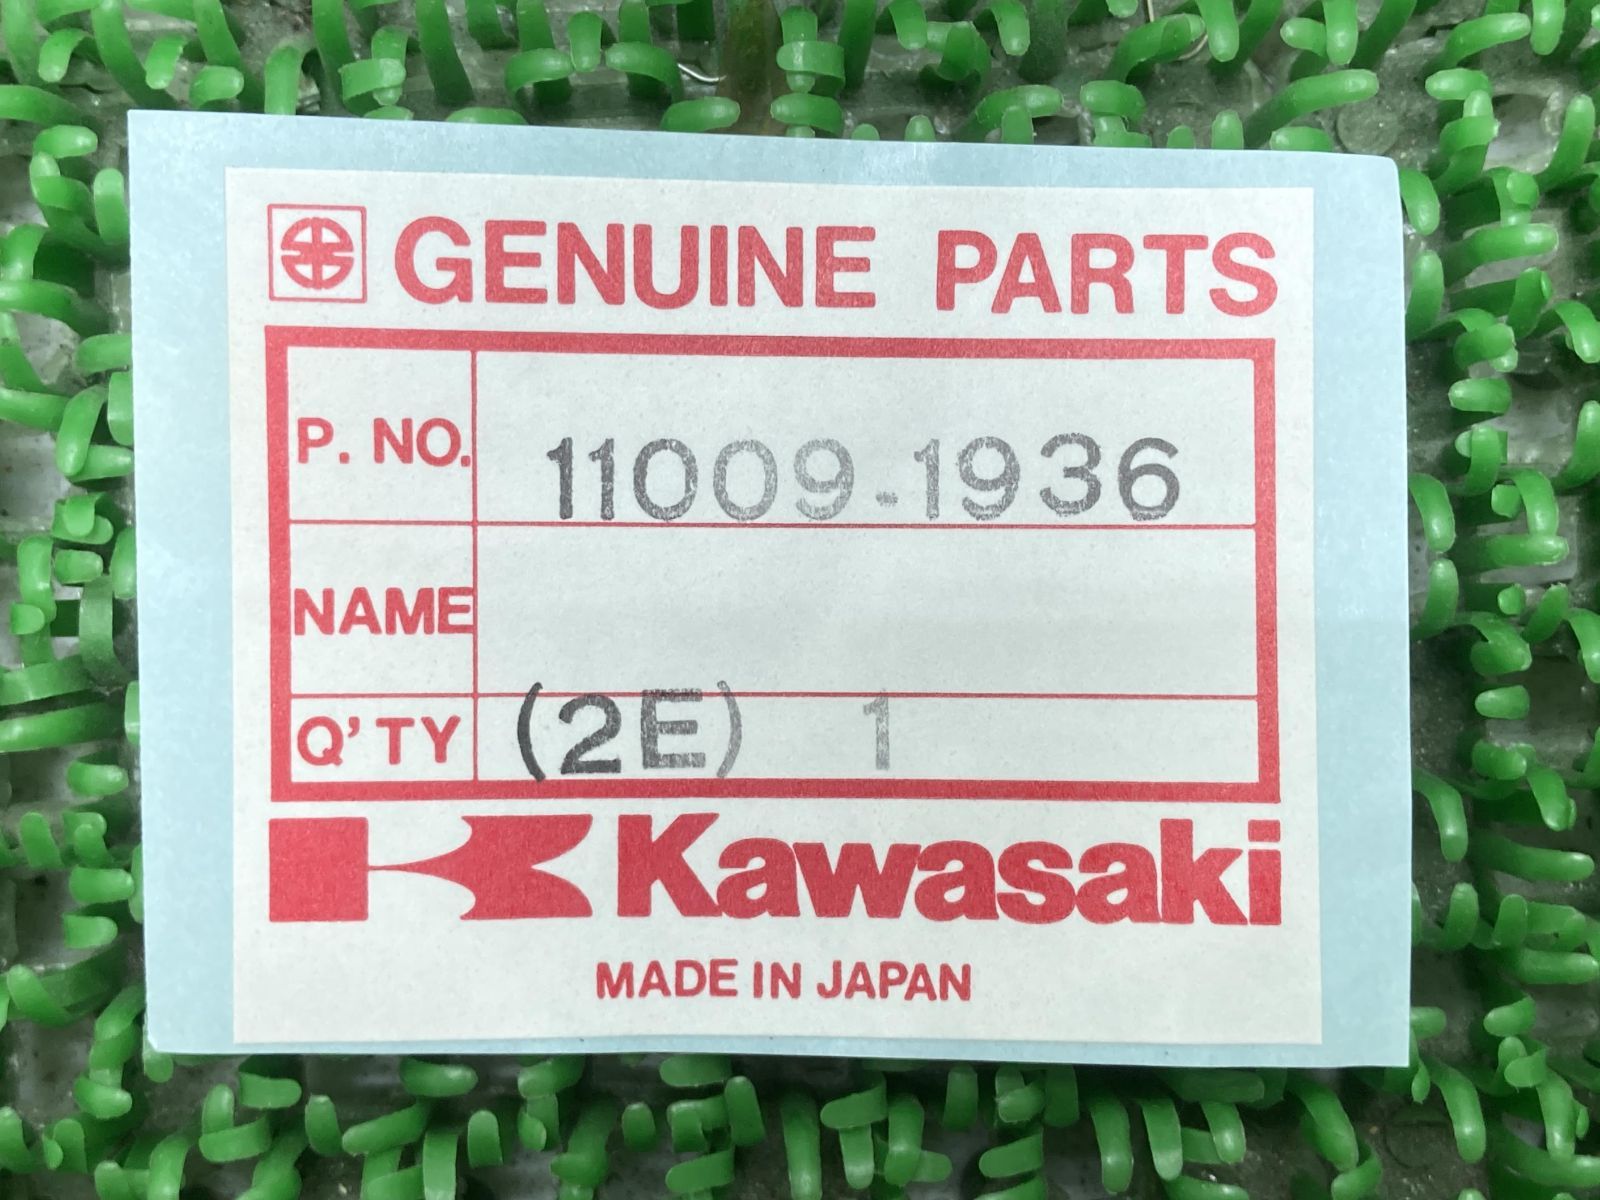 大人気定番商品 11009-1936 カワサキ純正 ガスケット JP